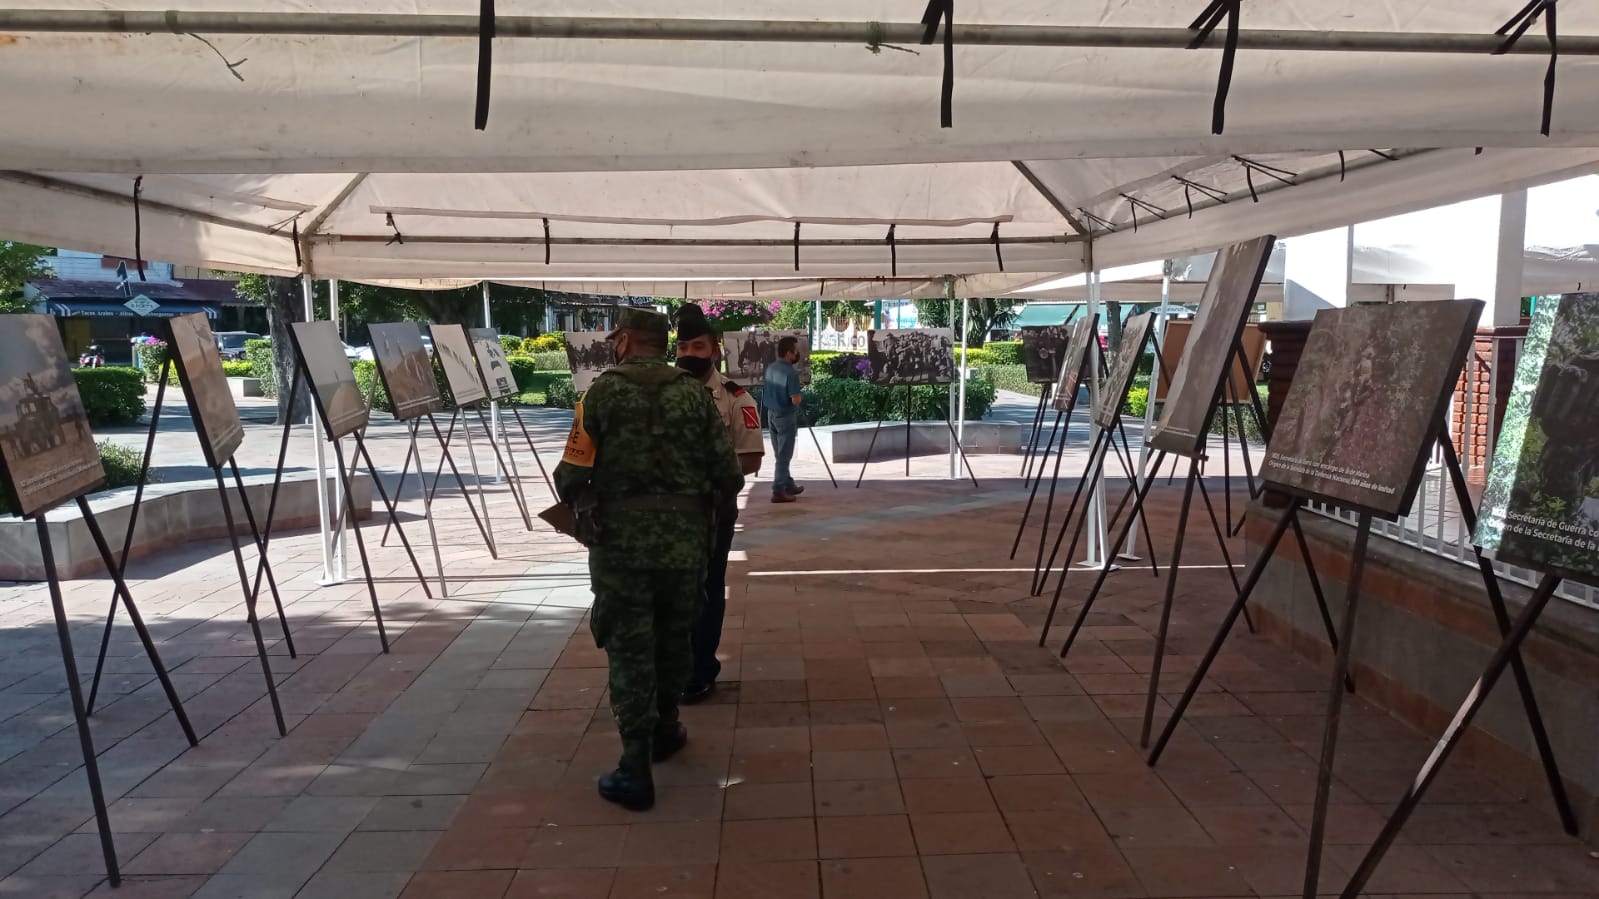 Presenta en Huatulco Ejército Mexicano Exposición Fotográfica “200 años de lealtad”